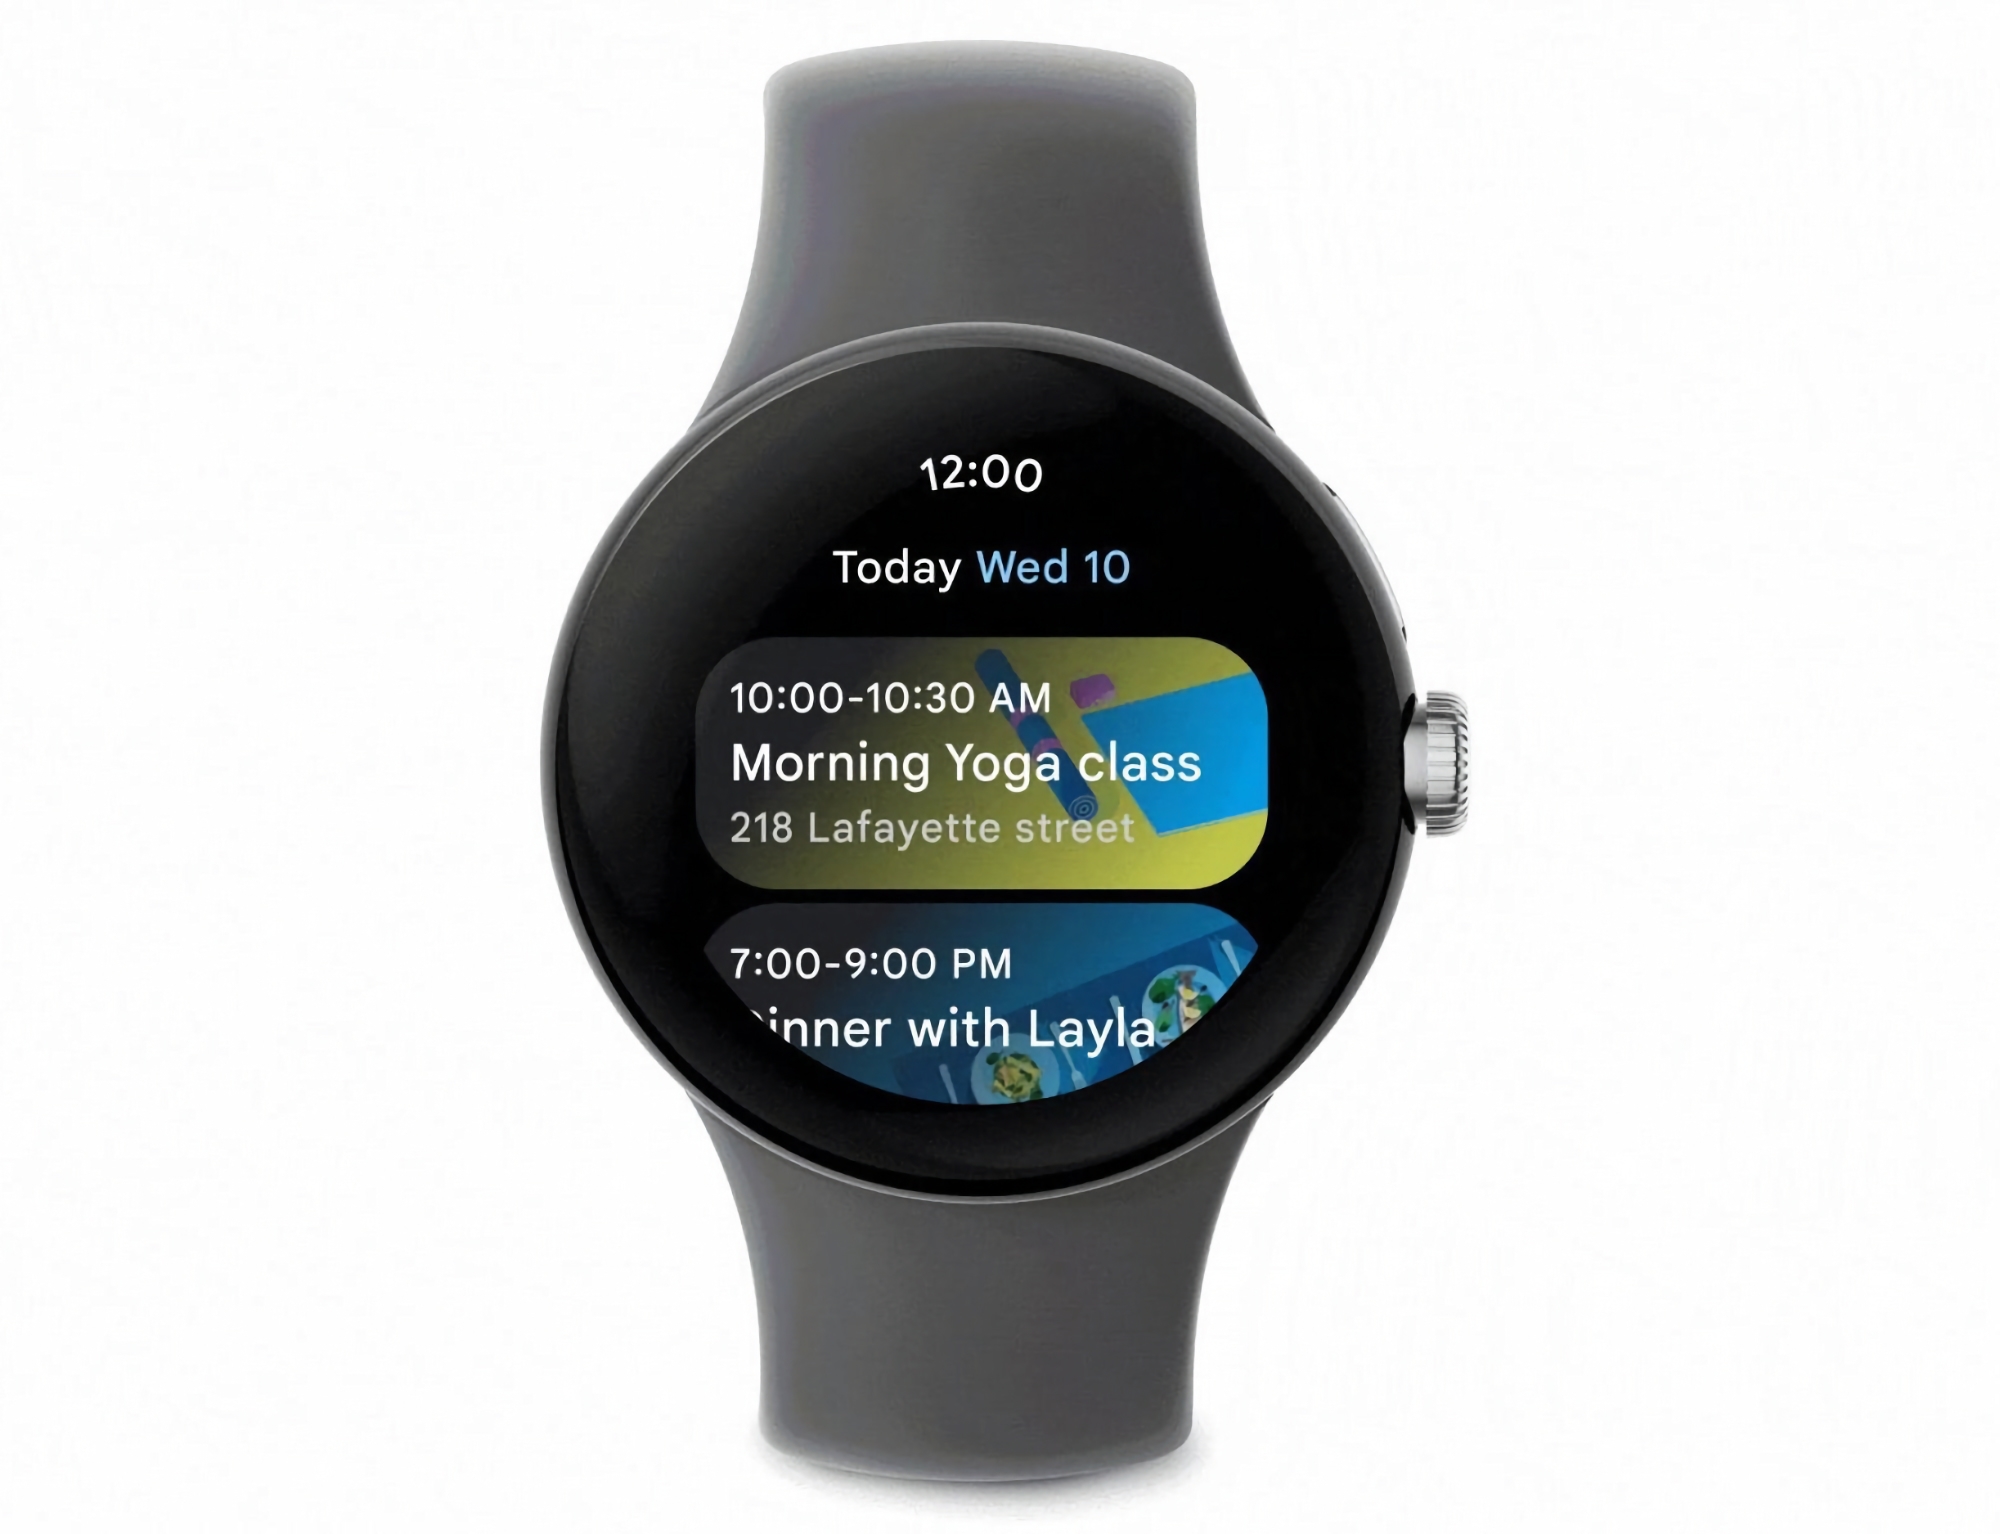 Użytkownicy smartwatchów z systemem Wear OS otrzymali aplikację Kalendarz Google